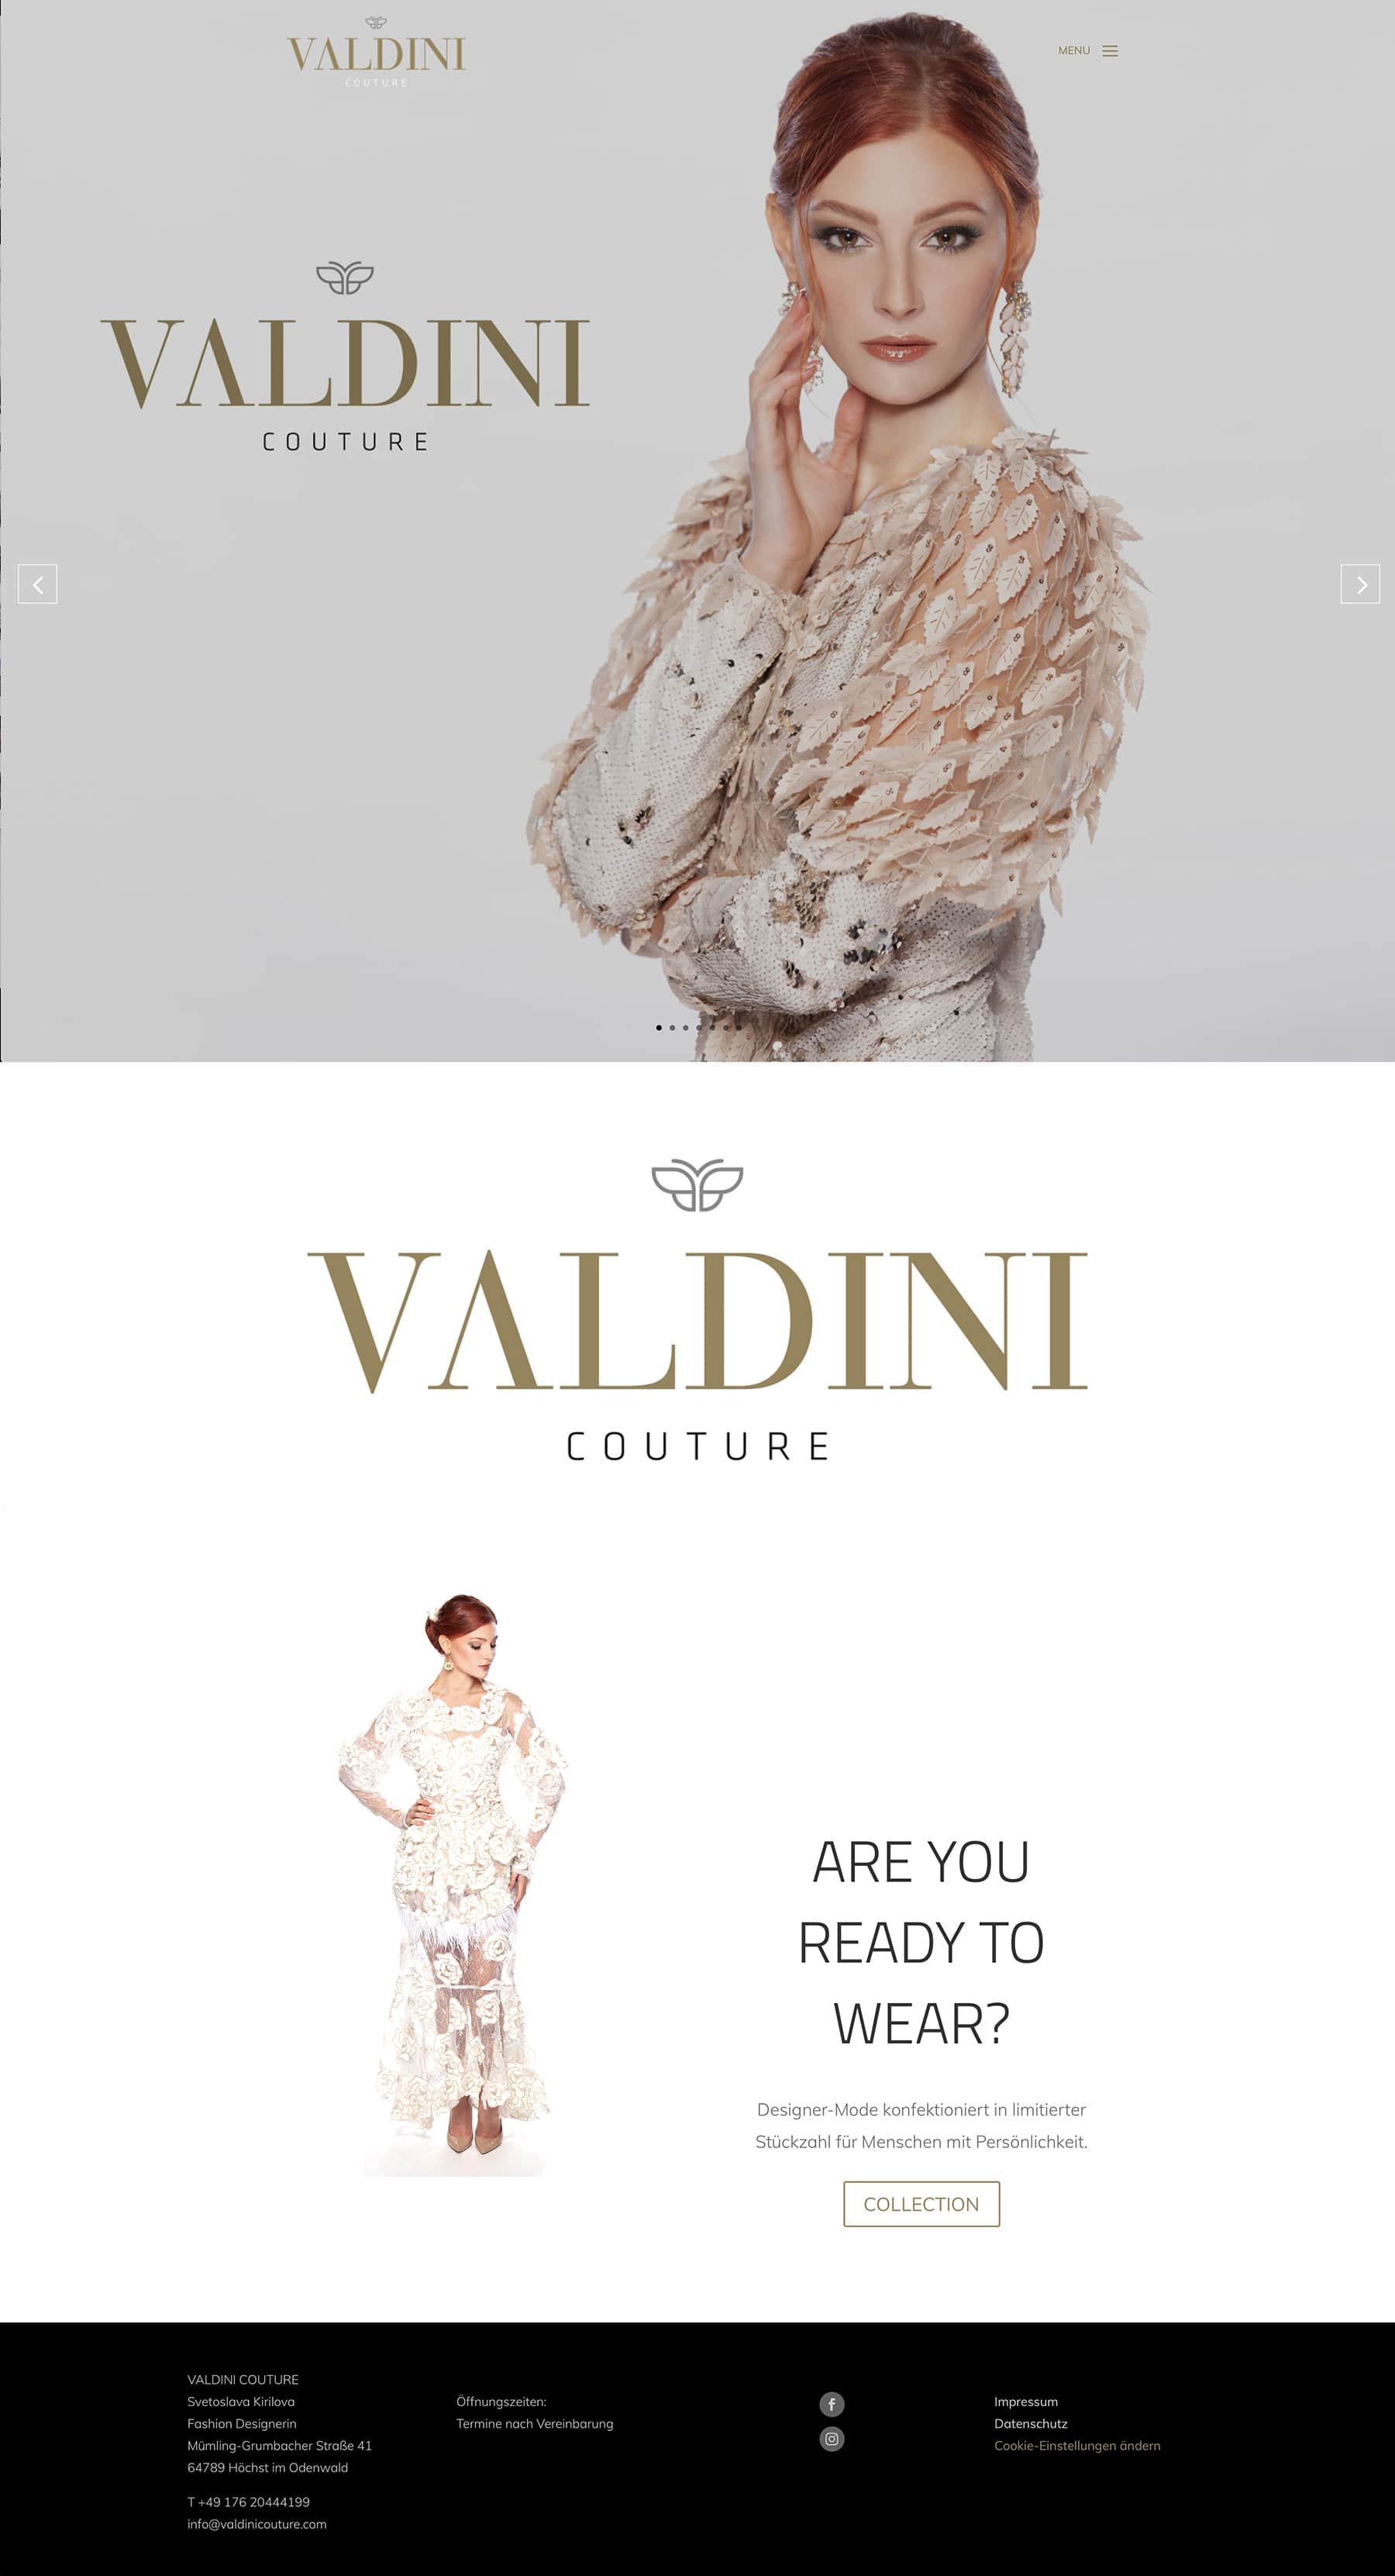 Webdesign Entwicklung für Valdini Couture durch Ronald Wissler Visuelle Kommunikation